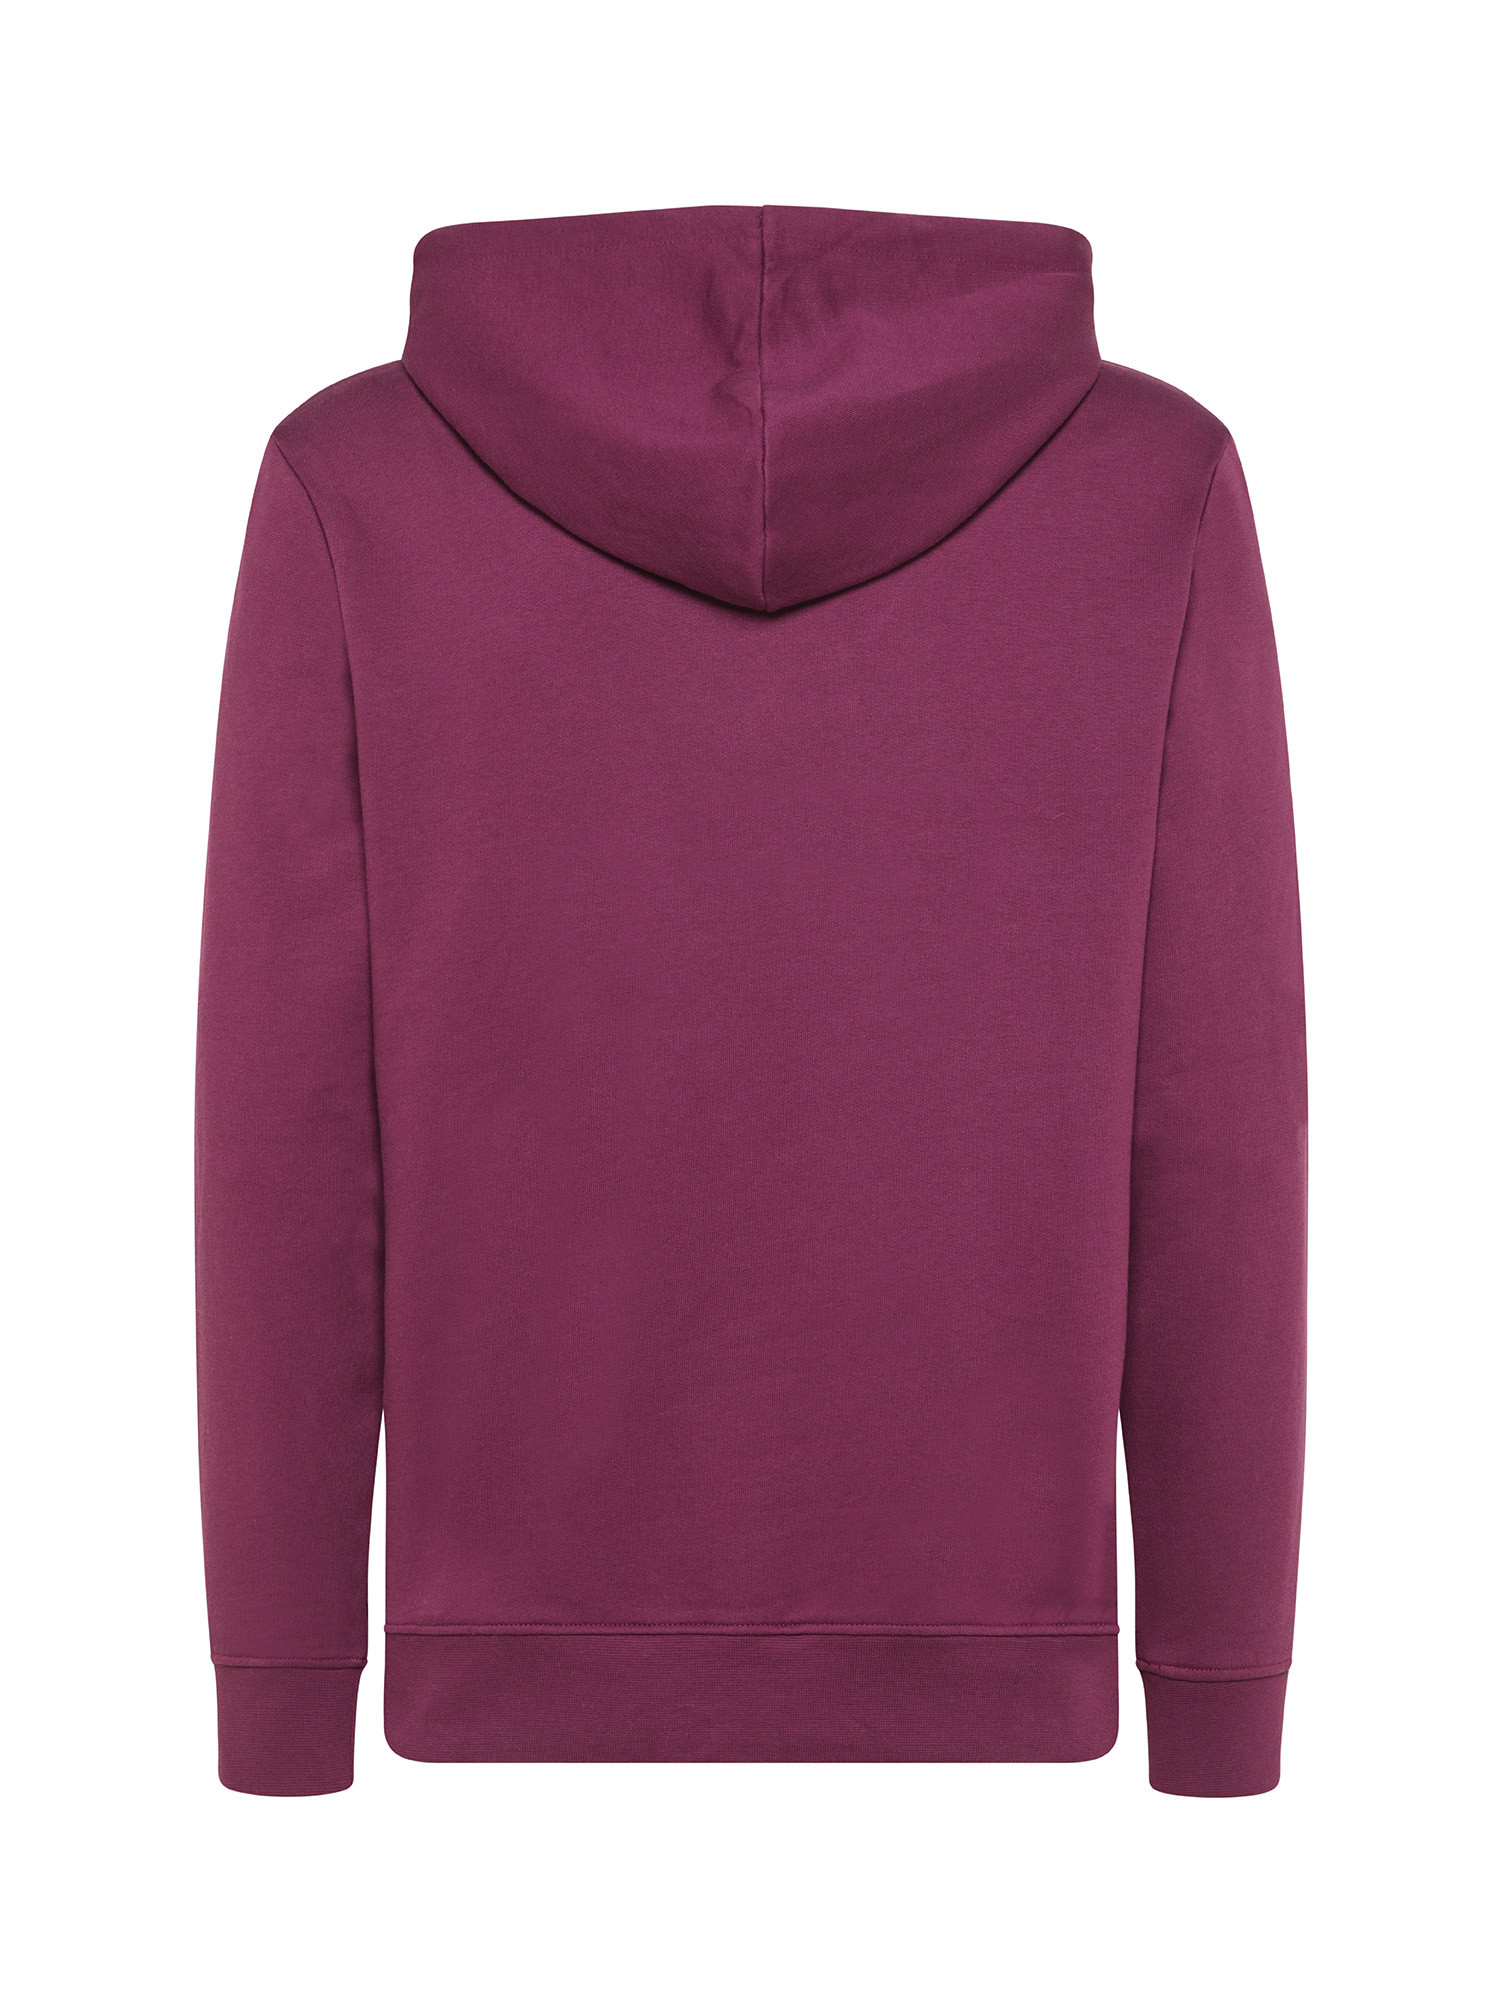 Armani Exchange - Sweatshirt with hood and logo, Purple, large image number 1